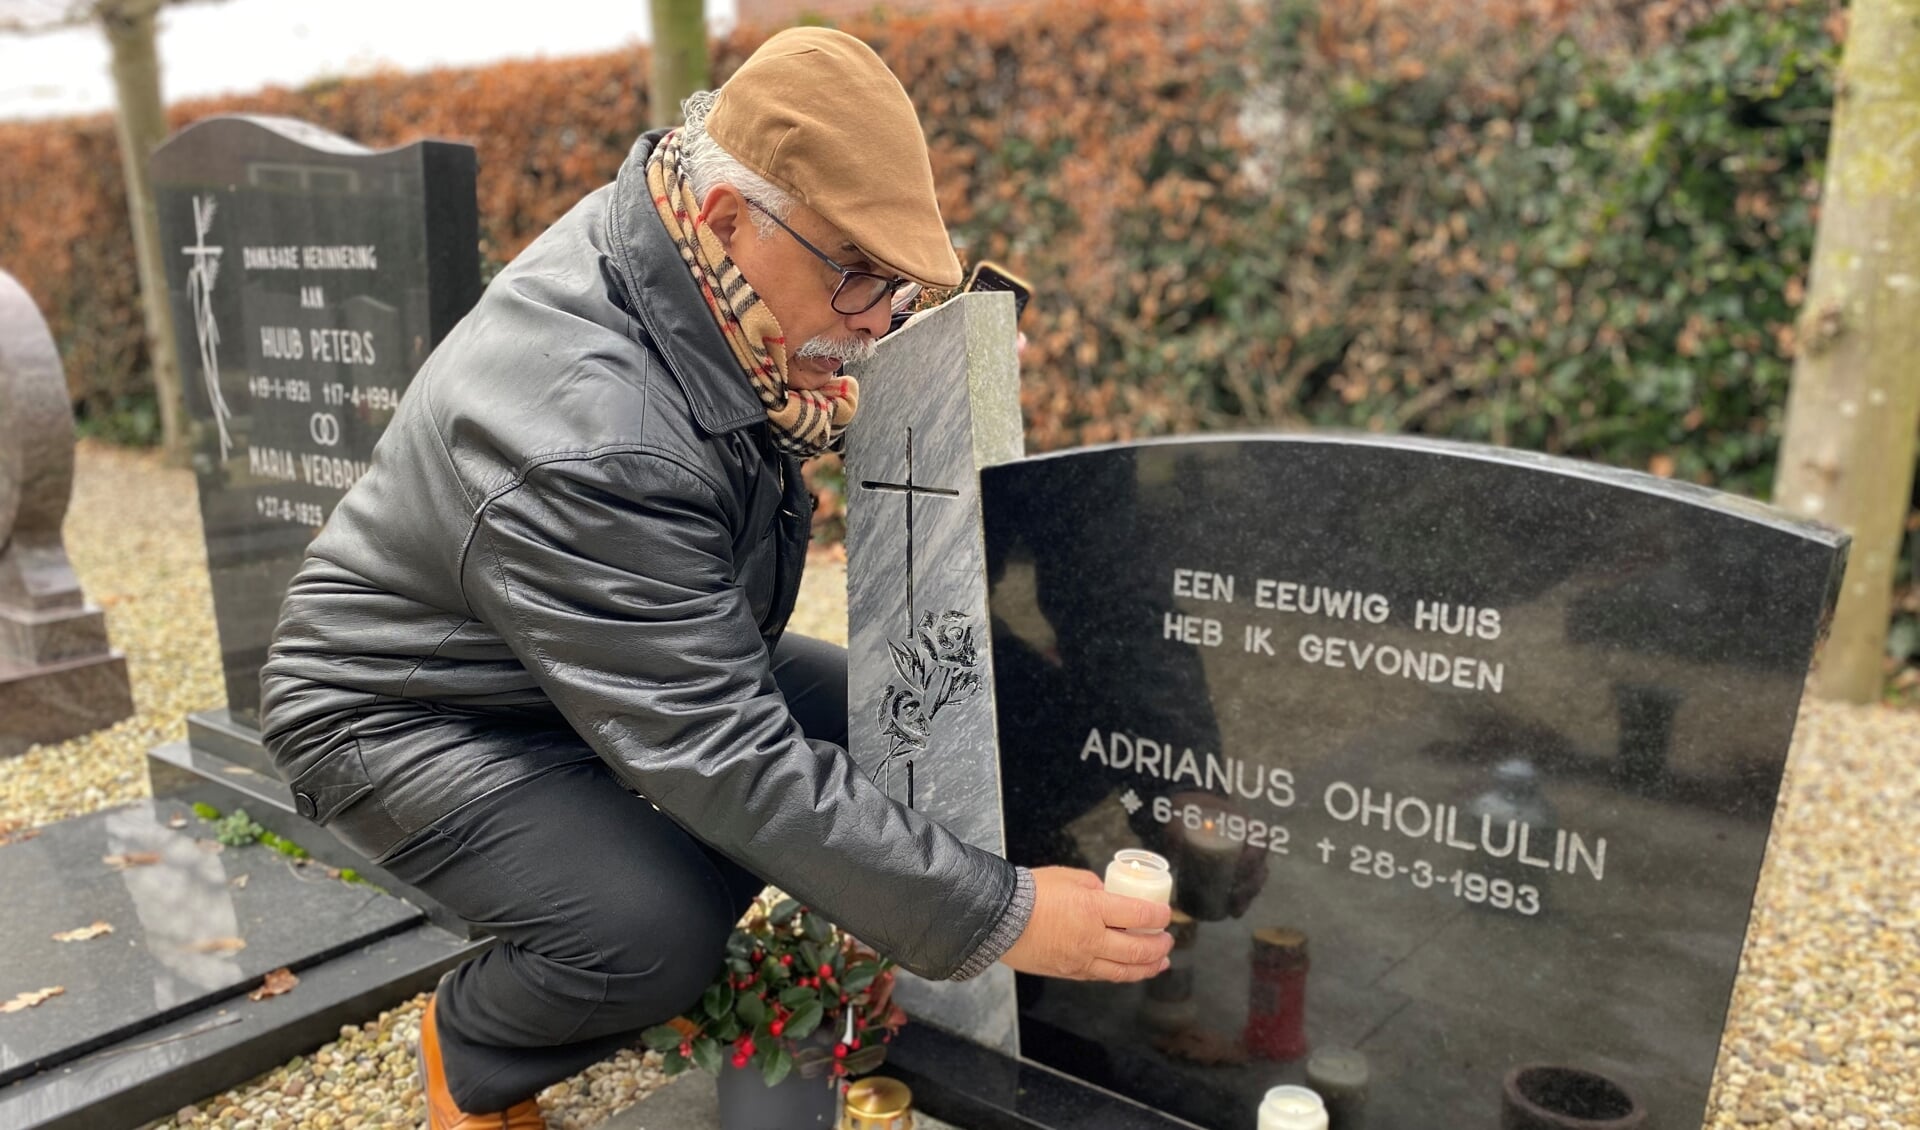 Vincent Mastail bij het graf van zijn opa Adrianus Ohoilulin op de begraafplaats in Katwijk. 'Deze erkenning zorgt voor trots en rust bij de nabestaanden.'